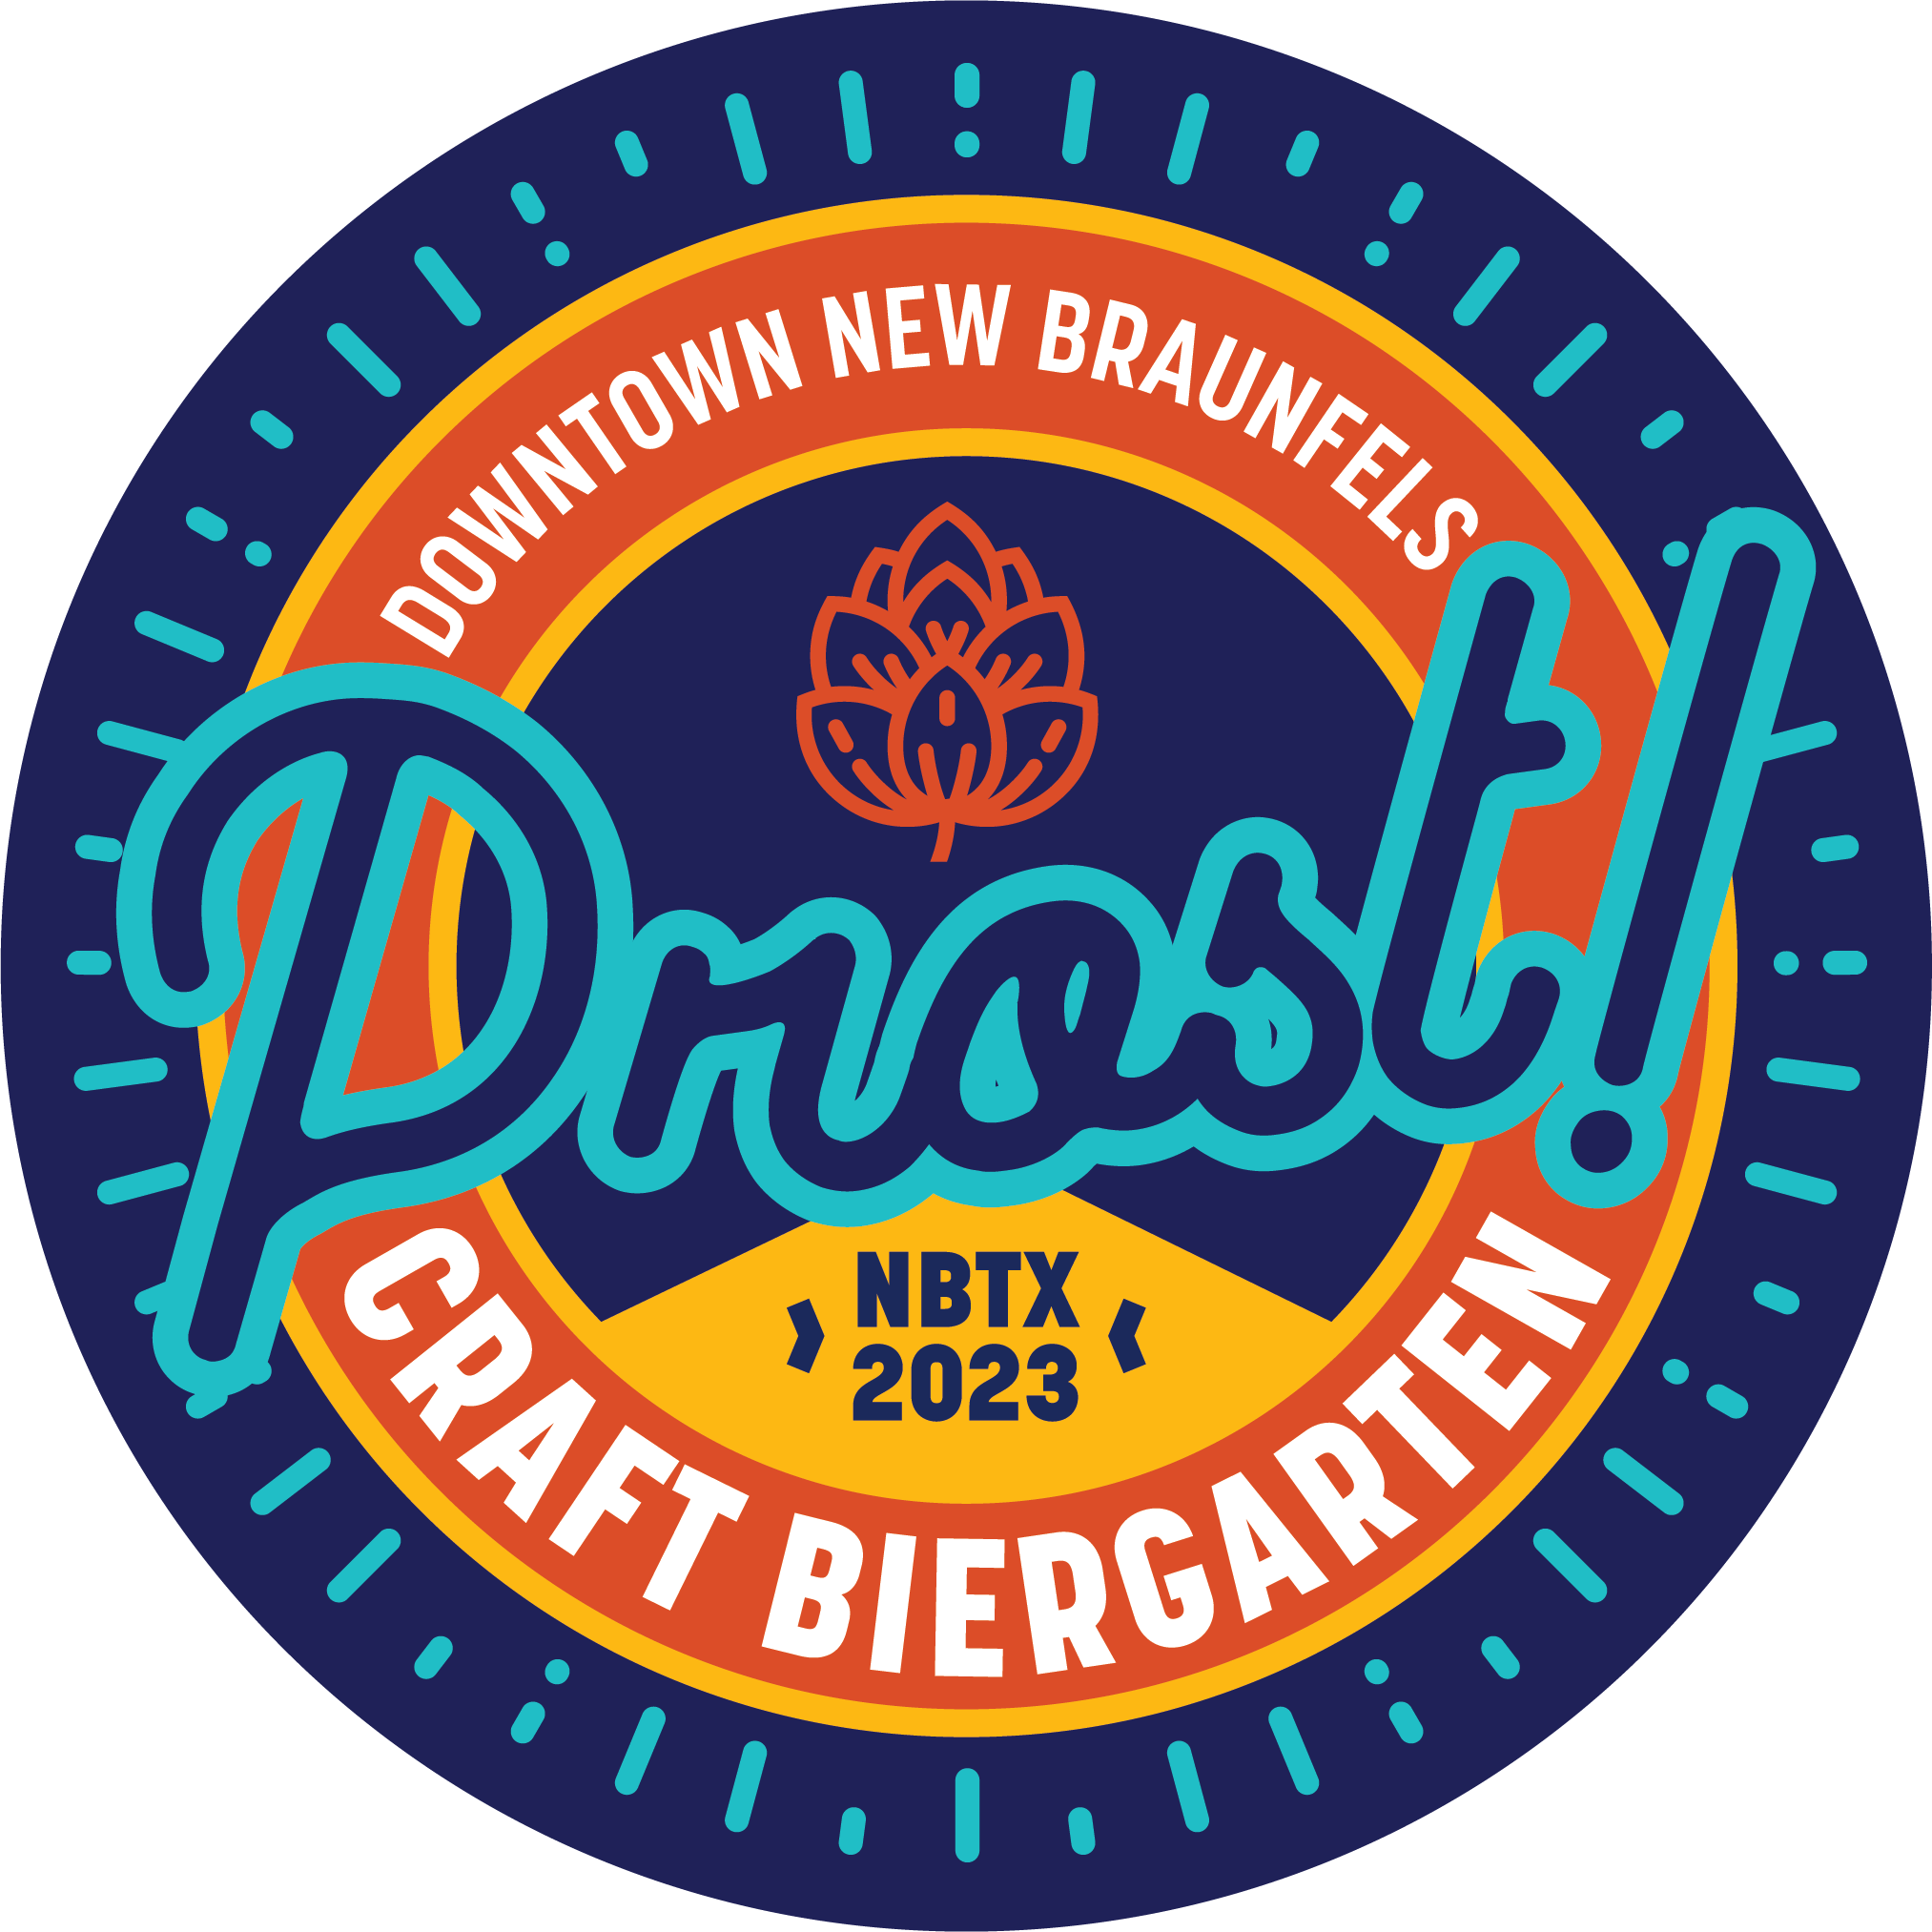 Downtown New Braunfels Craft Biergarten at Wein & Saengerfest 2023